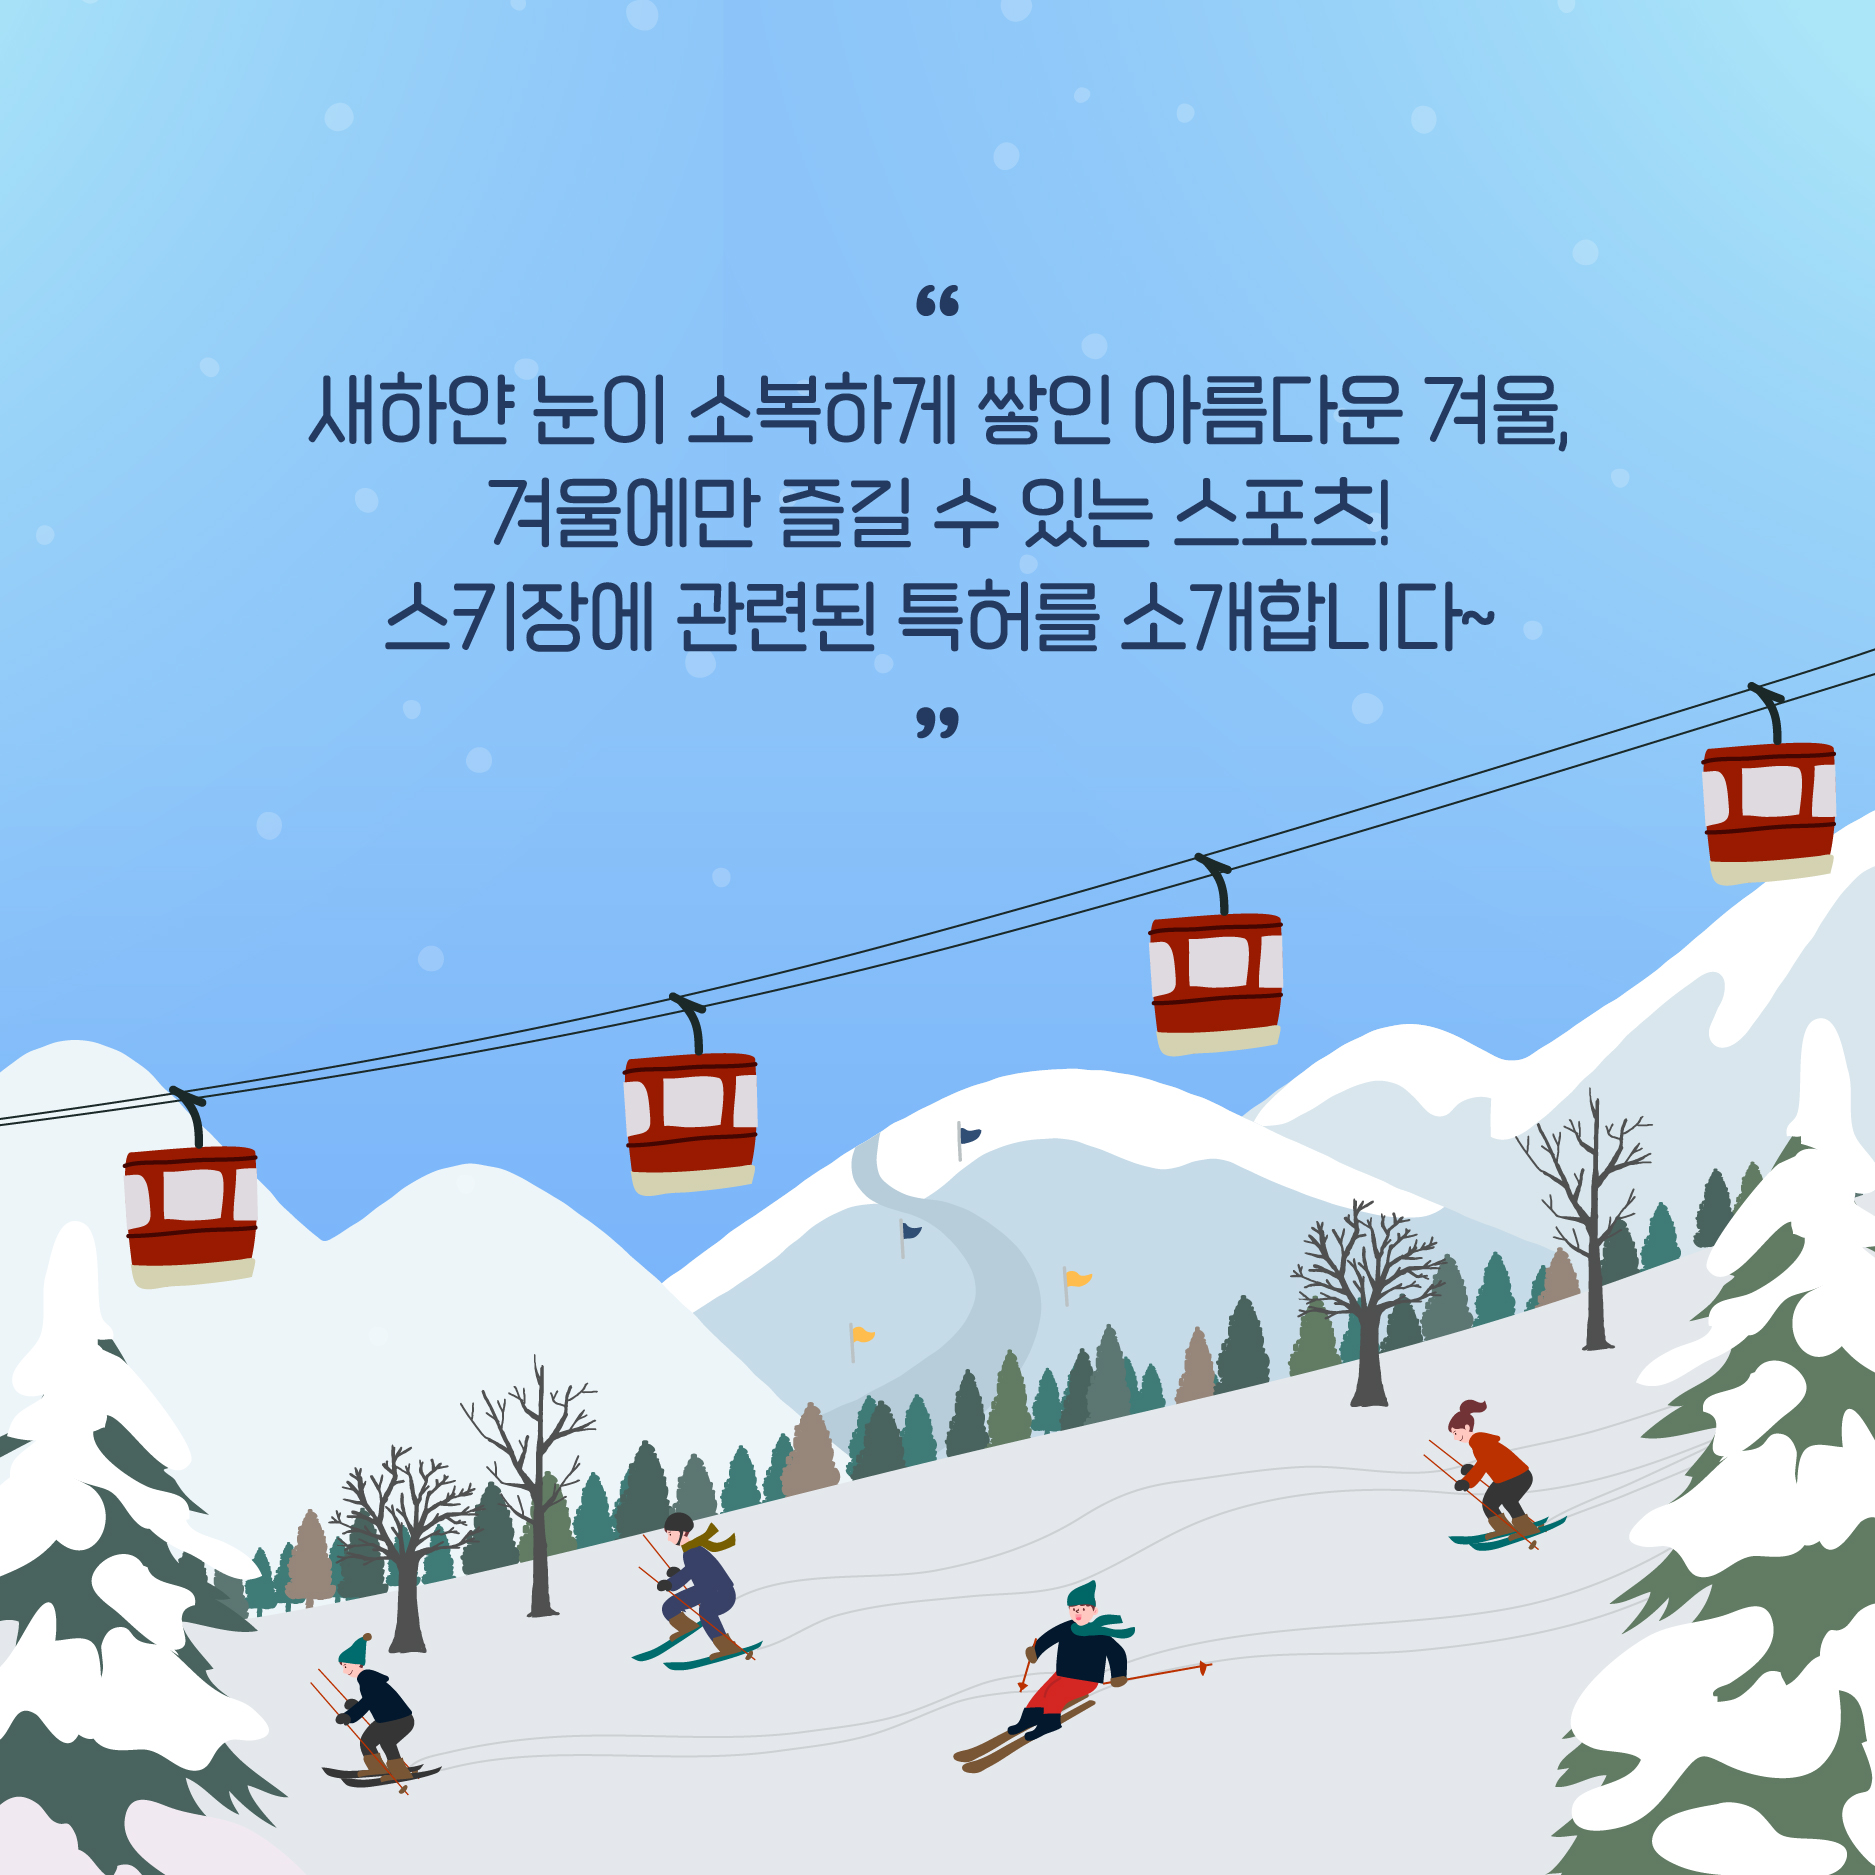 [트렌드 이슈] 겨울 스포츠 스키와 관련된 특허